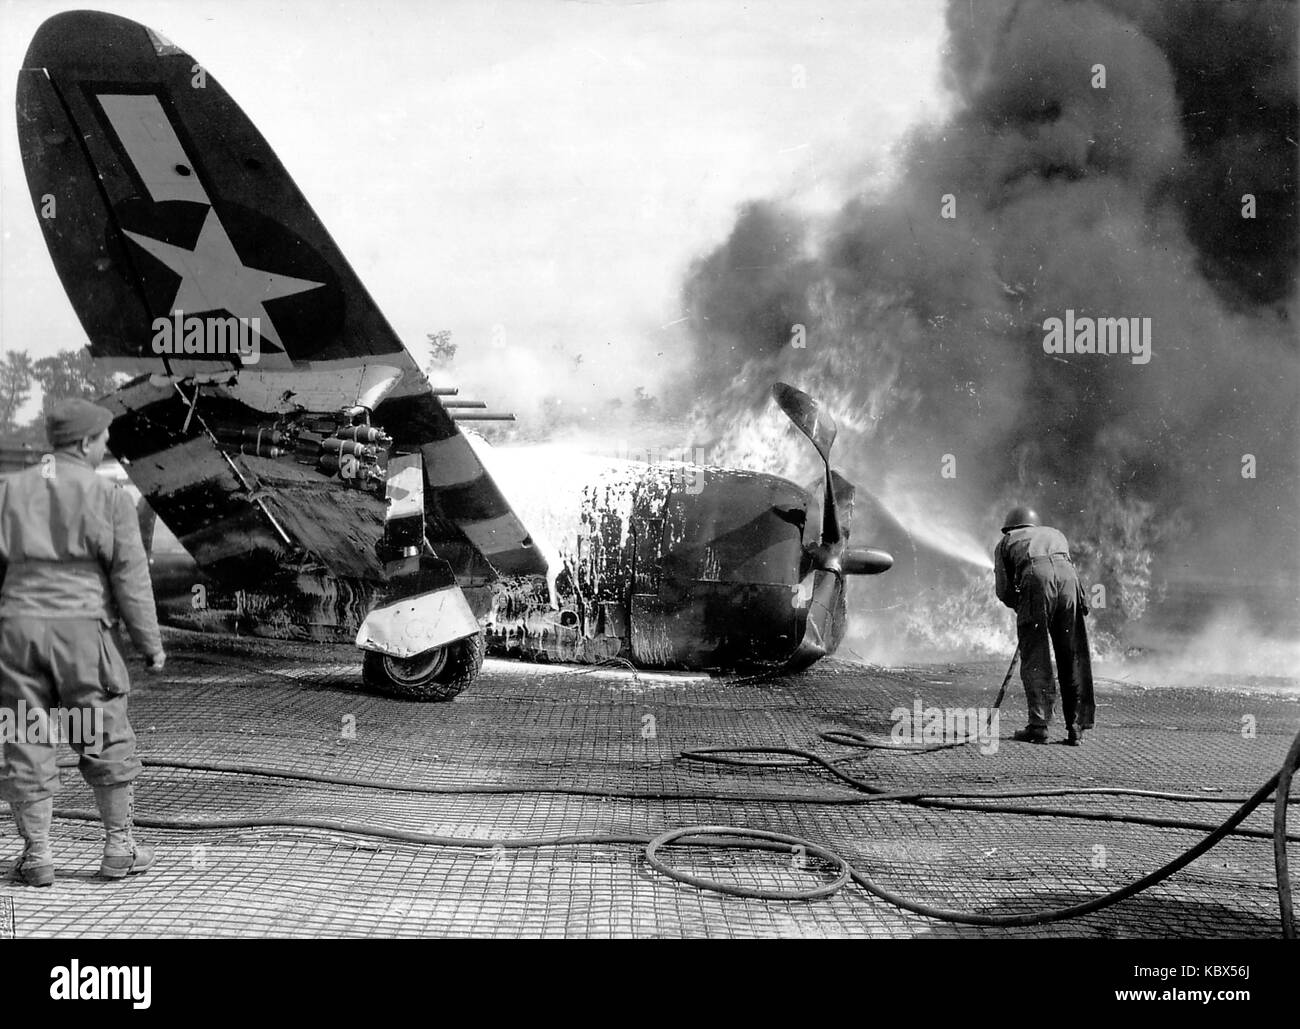 Republik P-47 Thunderbolt. Flugzeug in Flammen nach der Landung auf einem Flugzeugträger während des Zweiten Weltkriegs Stockfoto